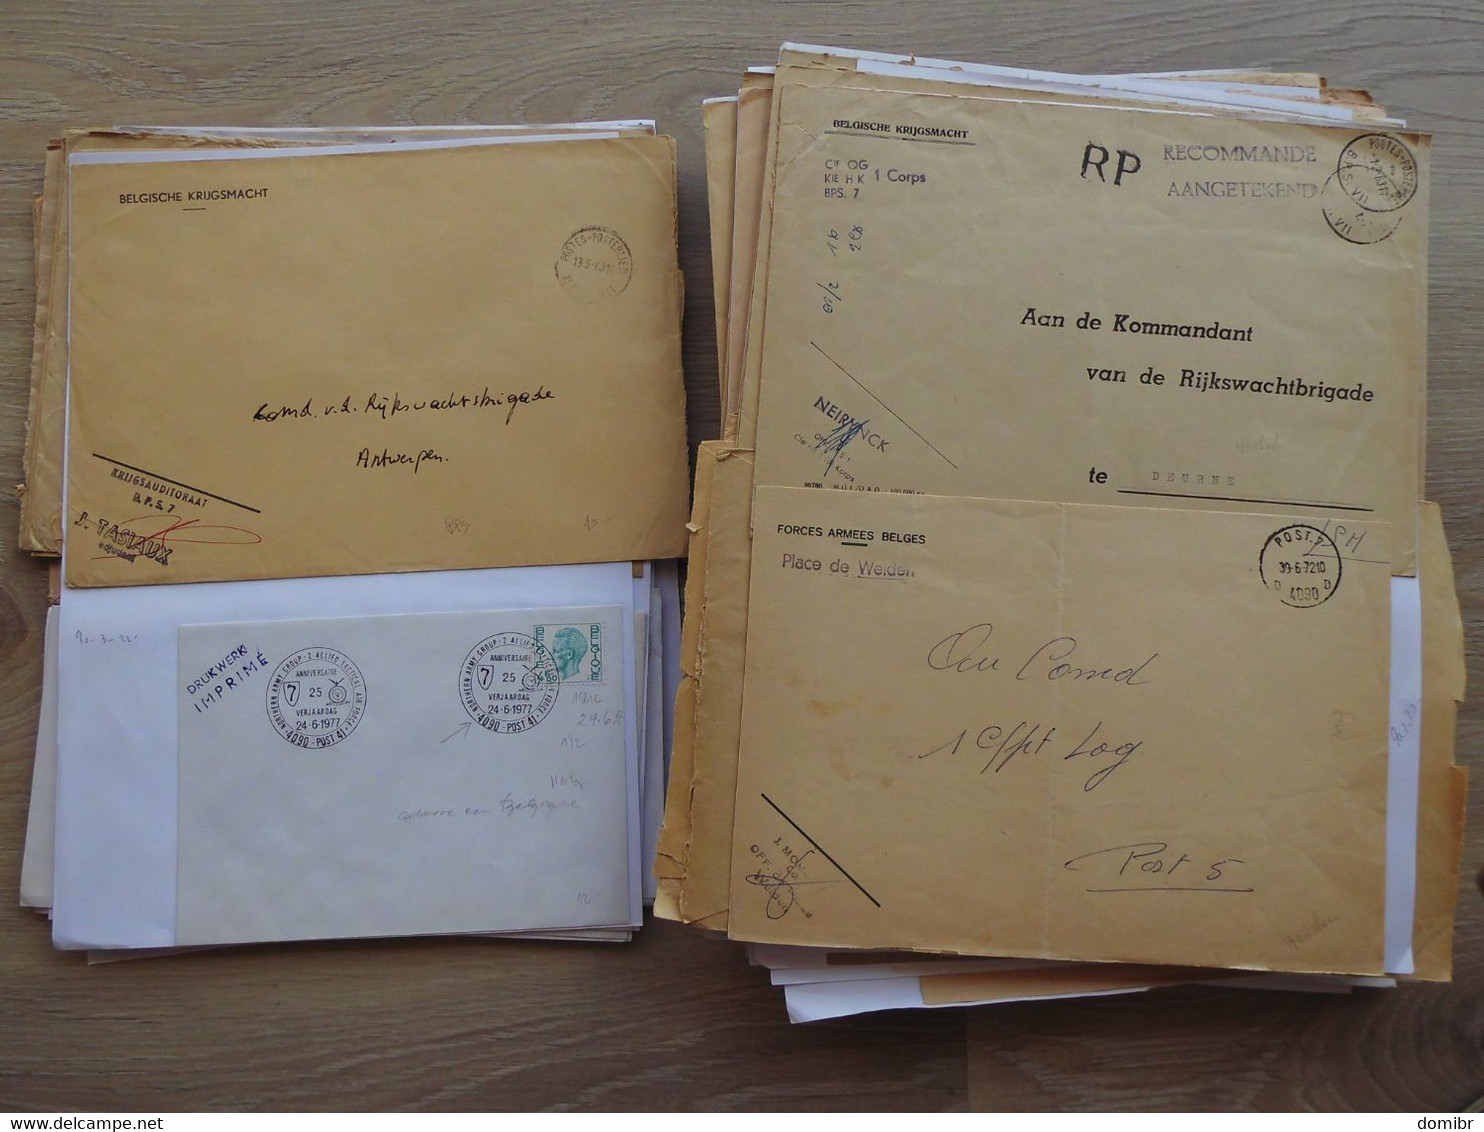 Belgique 230 lettres courrier militaire Forces Armées Belges belgische krijgsmacht Militair ATAF OTAN NATO